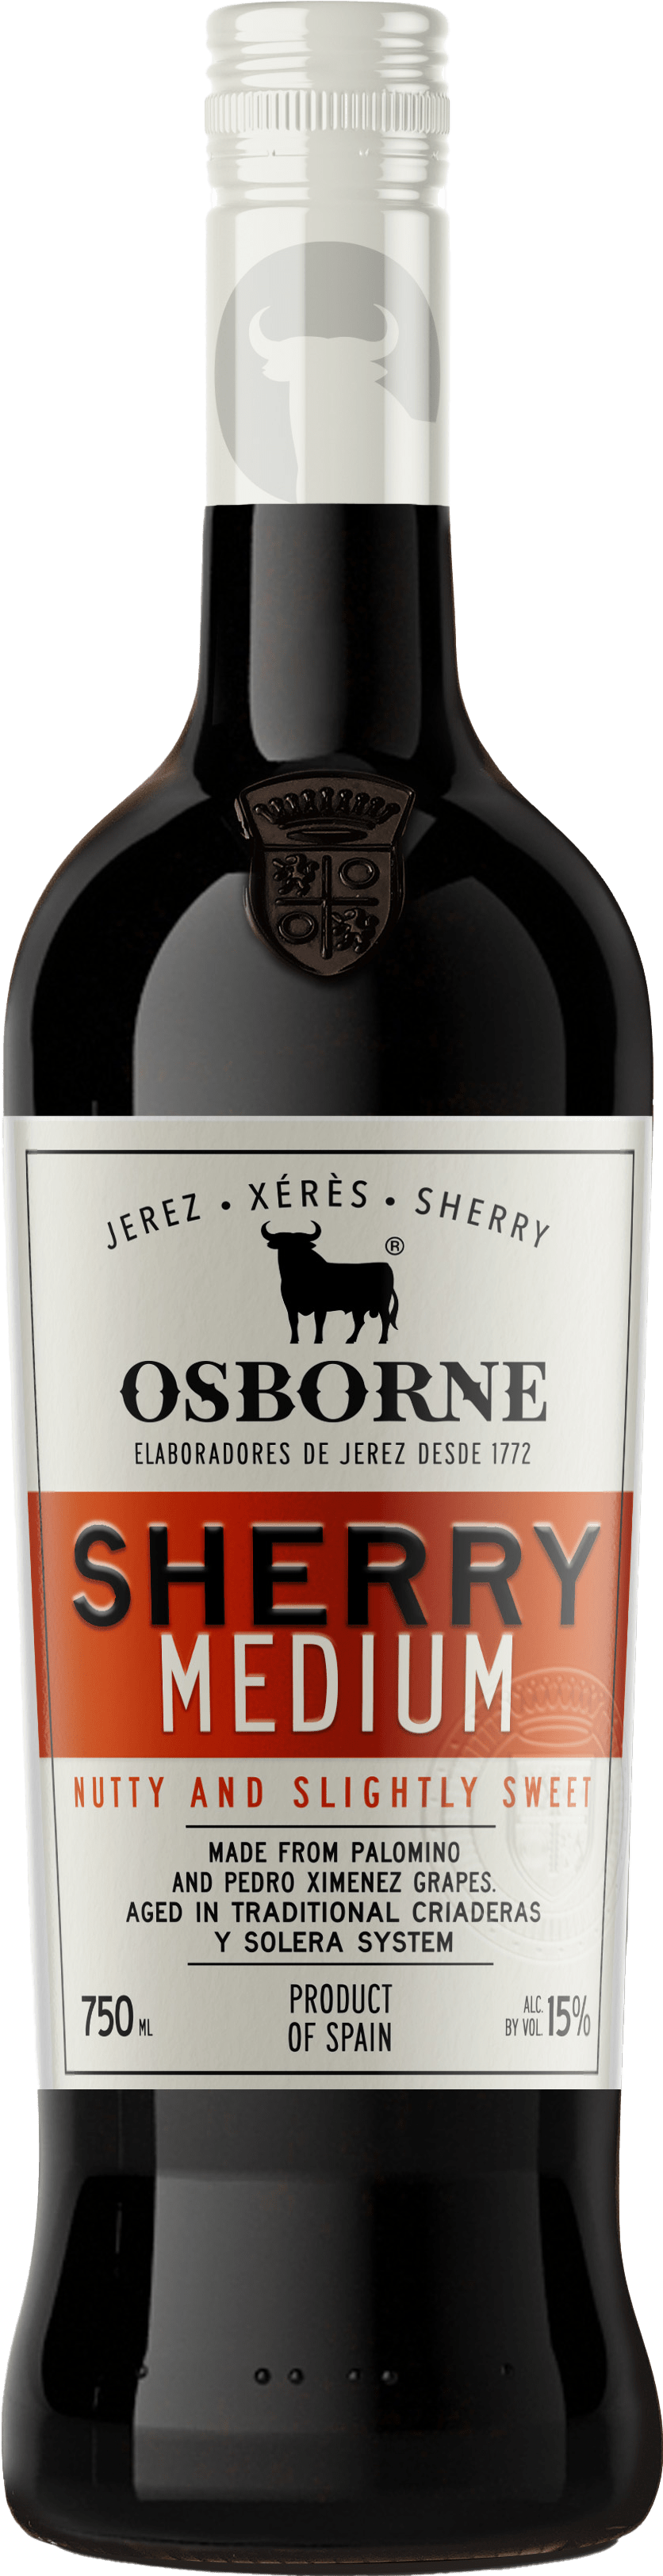 Osborne Sherry Medium von Osborne